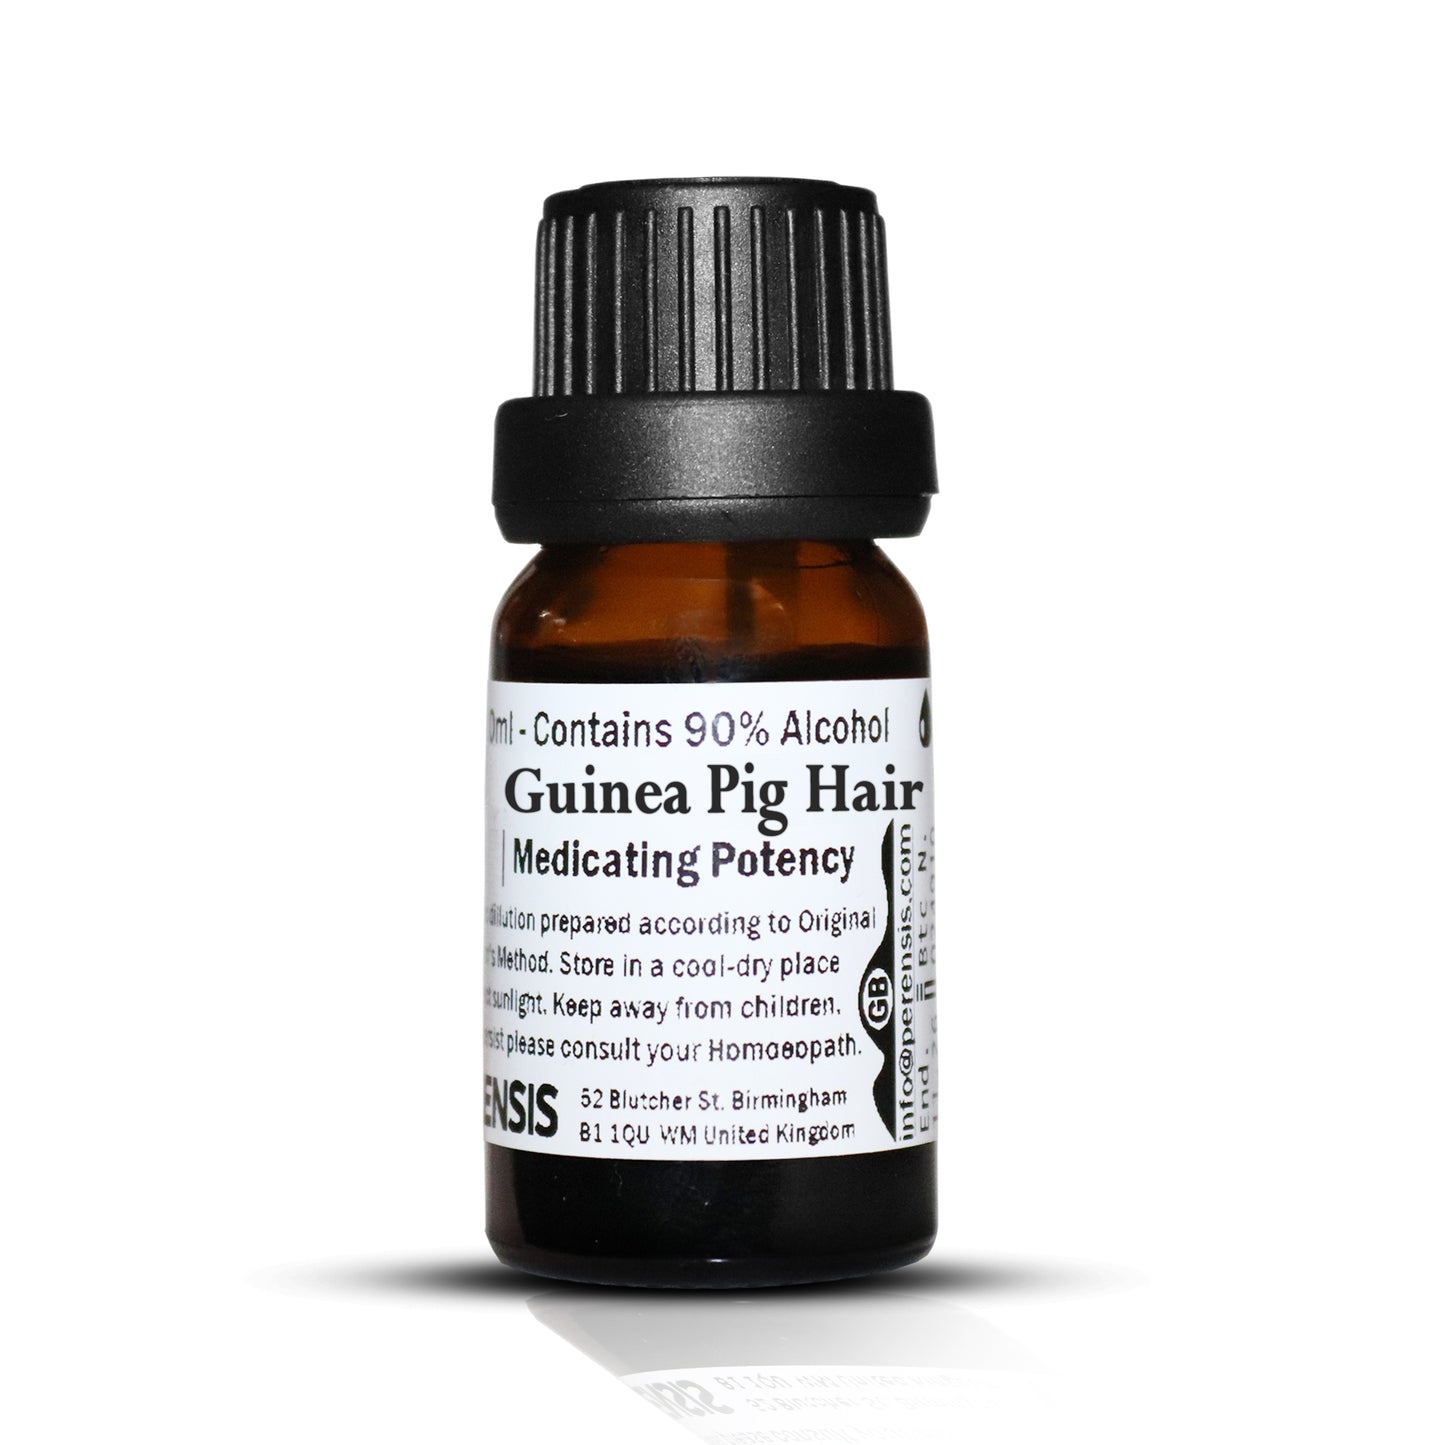 Guinea Pig Hair